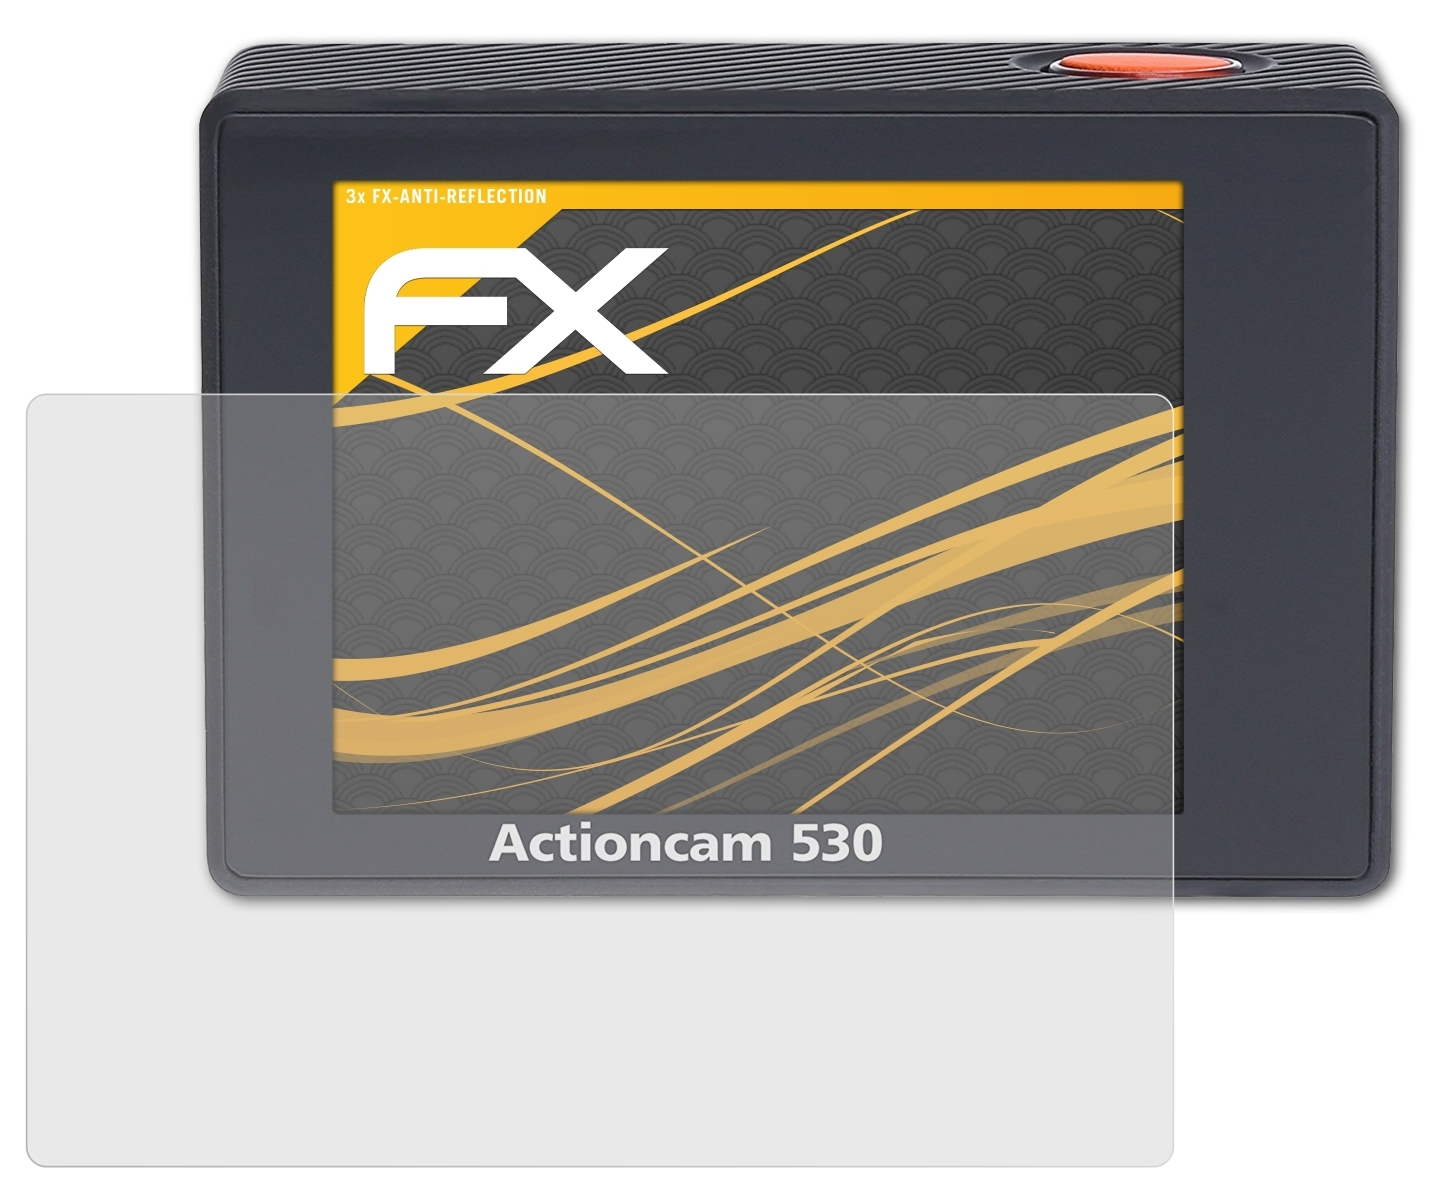 Displayschutz(für Rollei 530) Actioncam ATFOLIX FX-Antireflex 3x